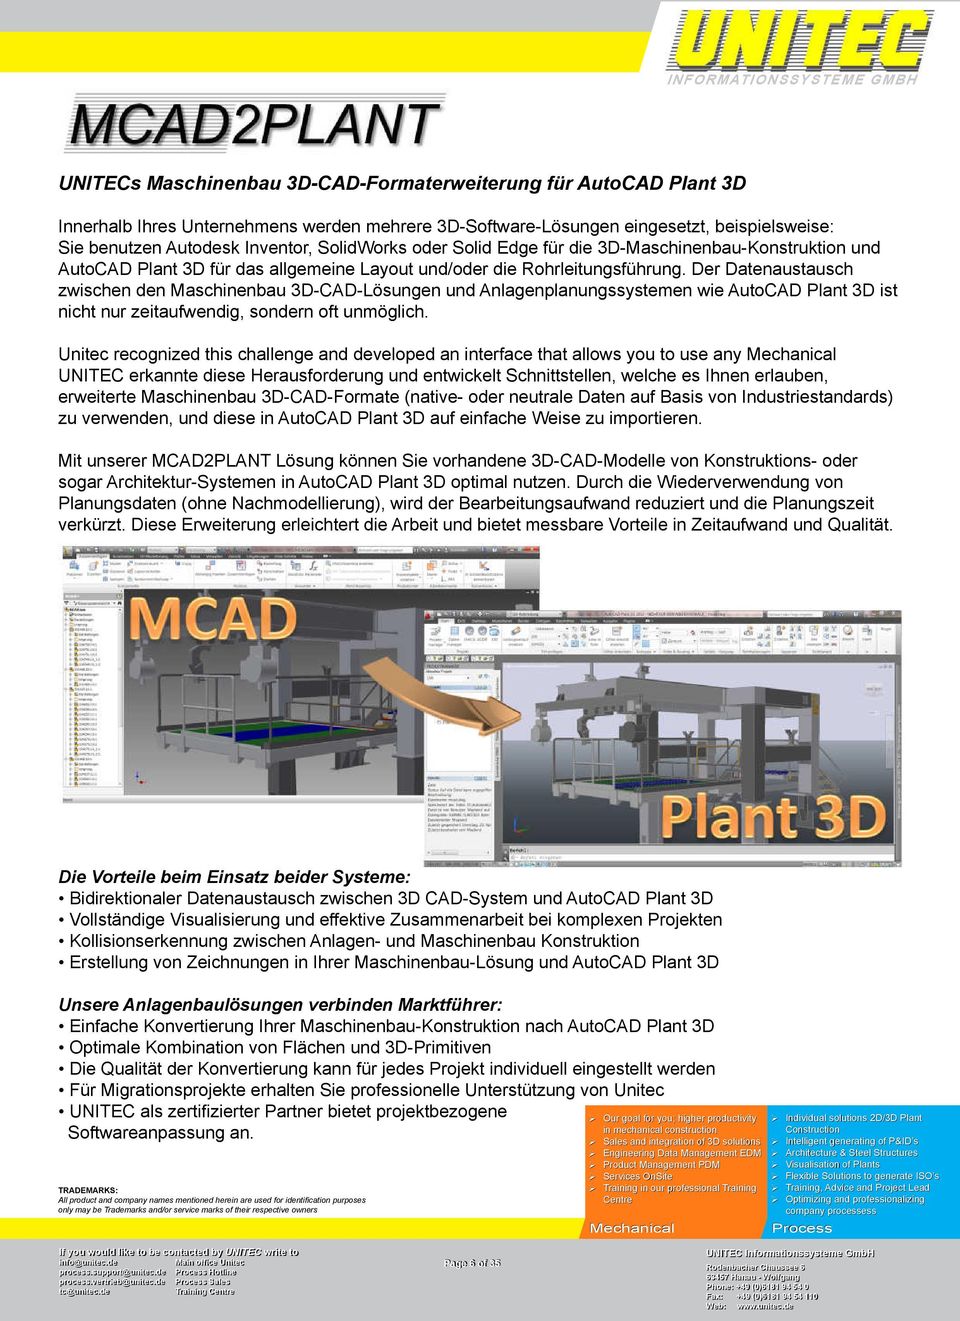 Der Datenaustausch zwischen den Maschinenbau 3D-CAD-Lösungen und Anlagenplanungssystemen wie AutoCAD Plant 3D ist nicht nur zeitaufwendig, sondern oft unmöglich.